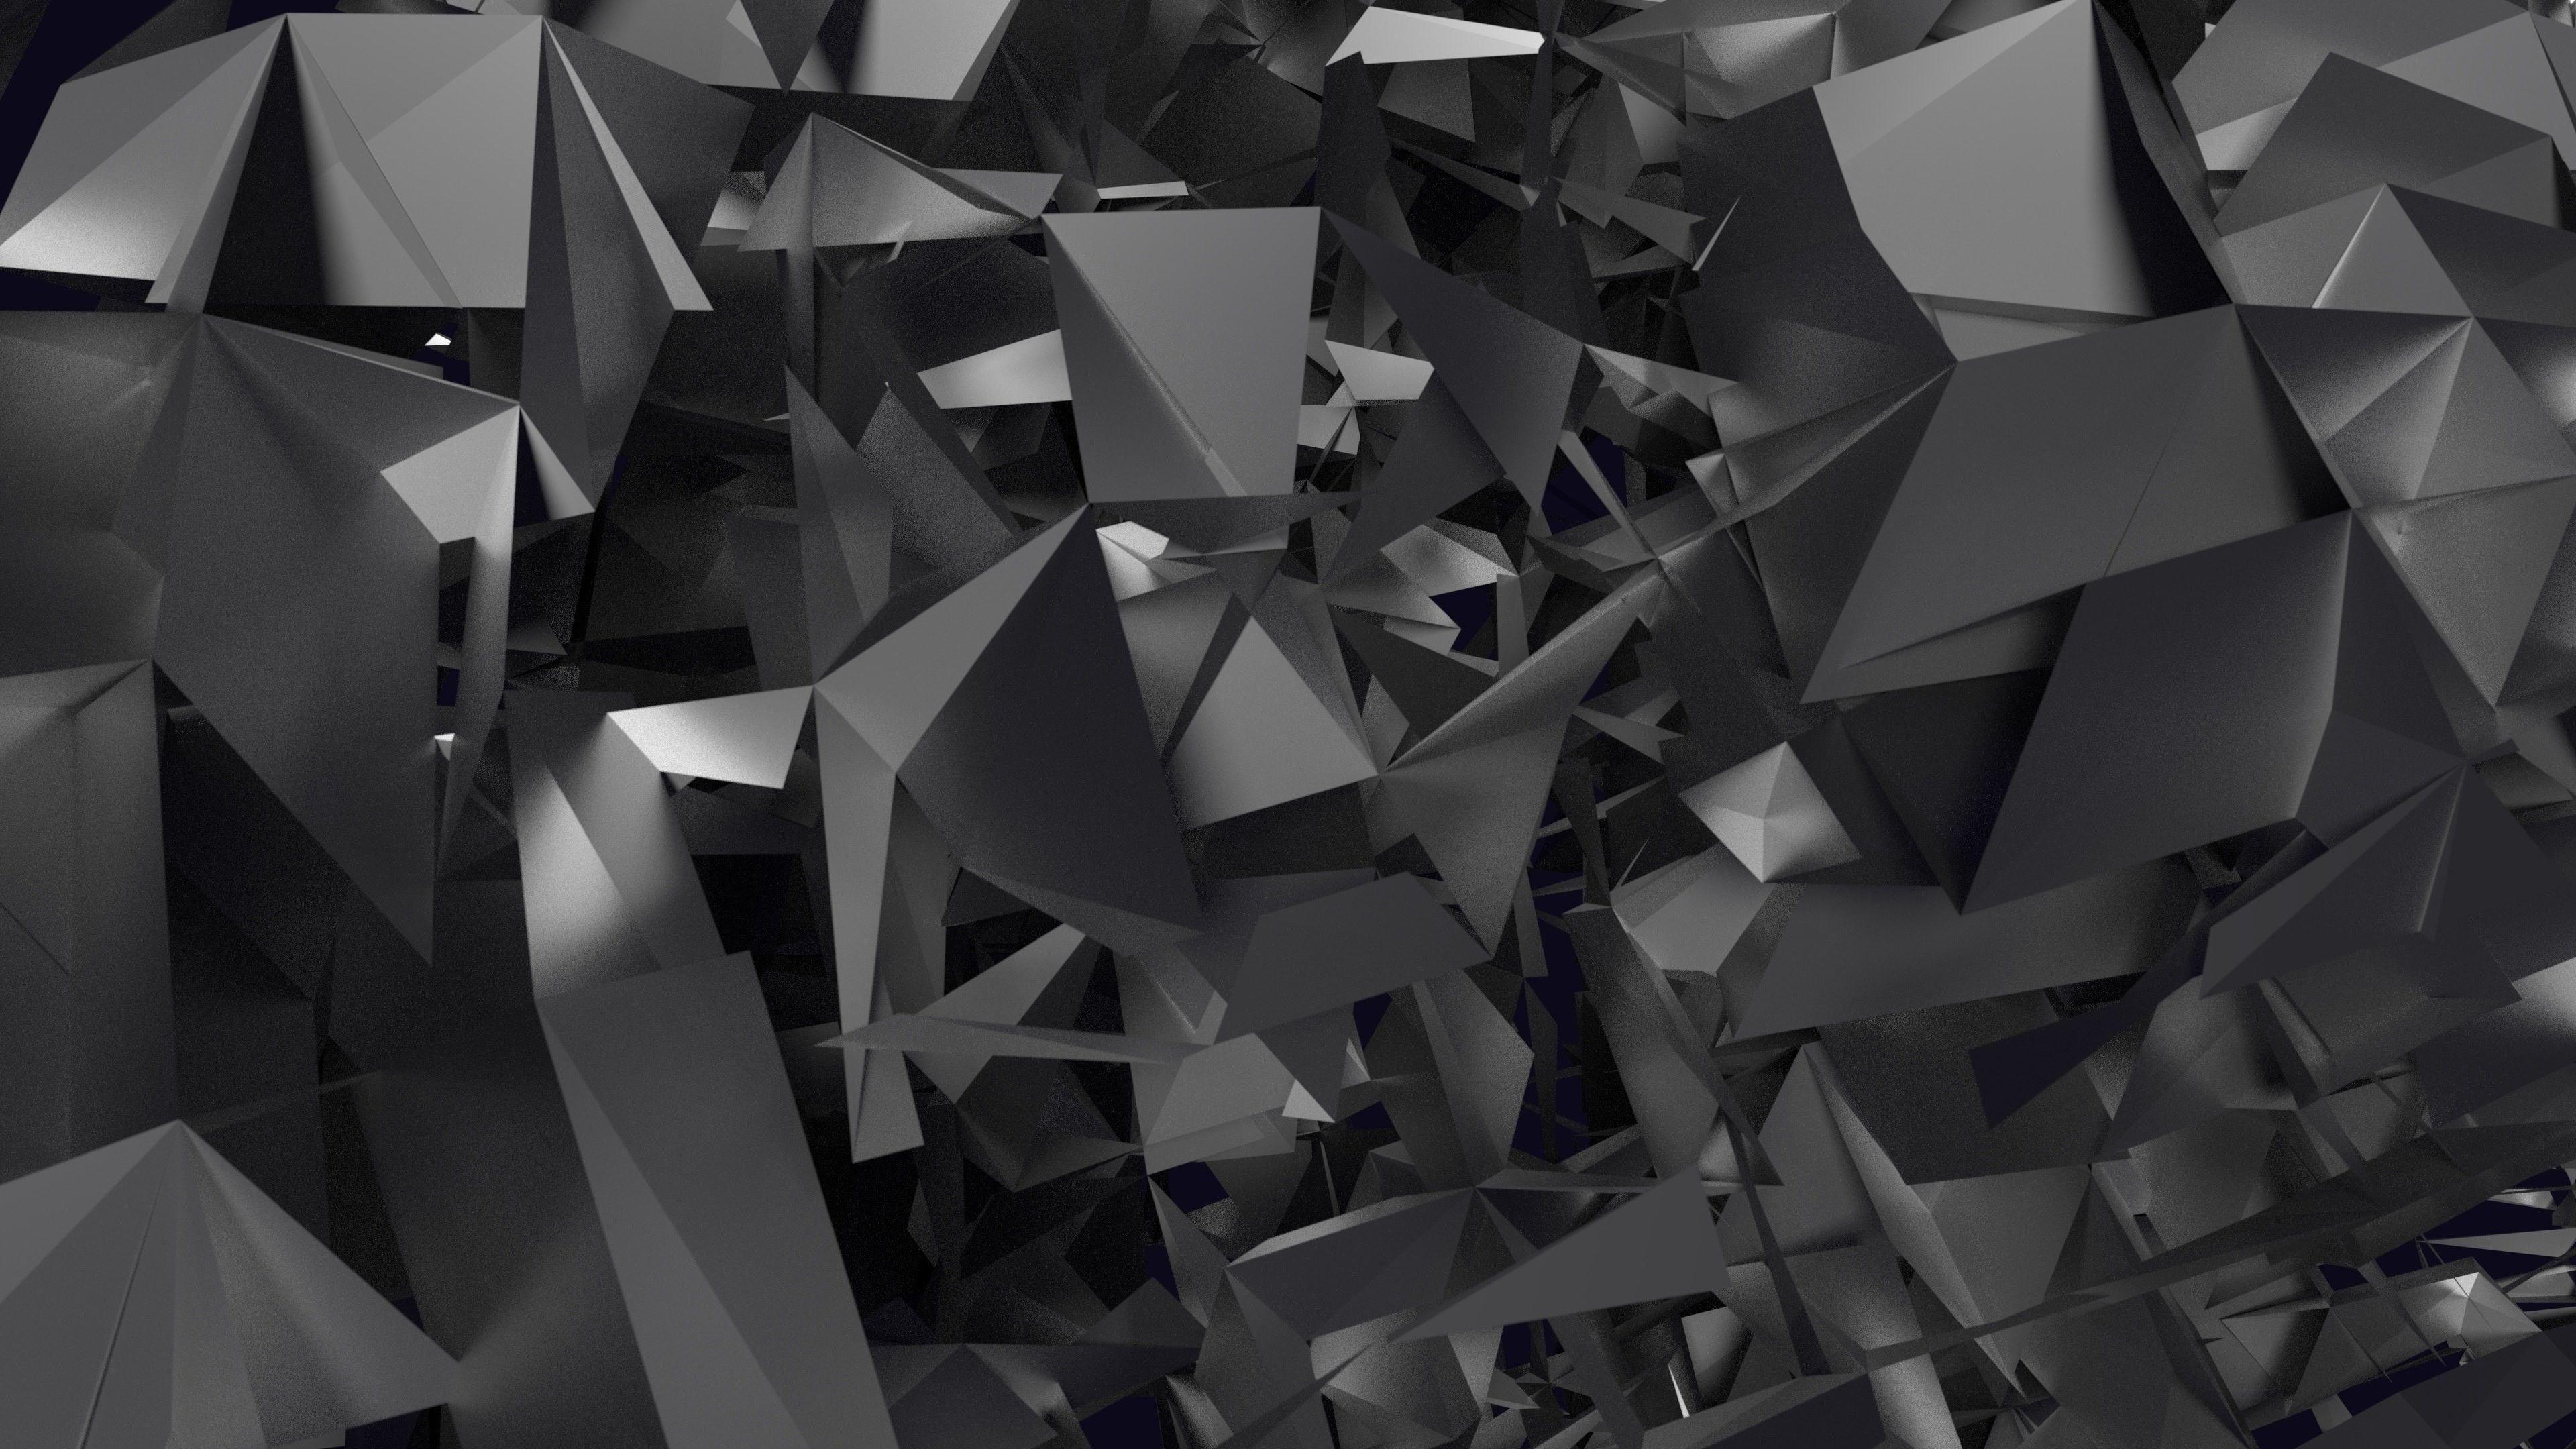 Hình nền đen trừu tượng 4K: Sự kết hợp tuyệt vời giữa trừu tượng và màu đen tạo nên một hình nền độc đáo và thu hút. Các đường nét phức tạp, đối xứng táo bạo cùng với việc sử dụng màu đen sẽ khiến bạn phát hiện ra những chi tiết mới và cảm thấy rất thú vị khi nhìn vào hình nền đen trừu tượng 4K này.